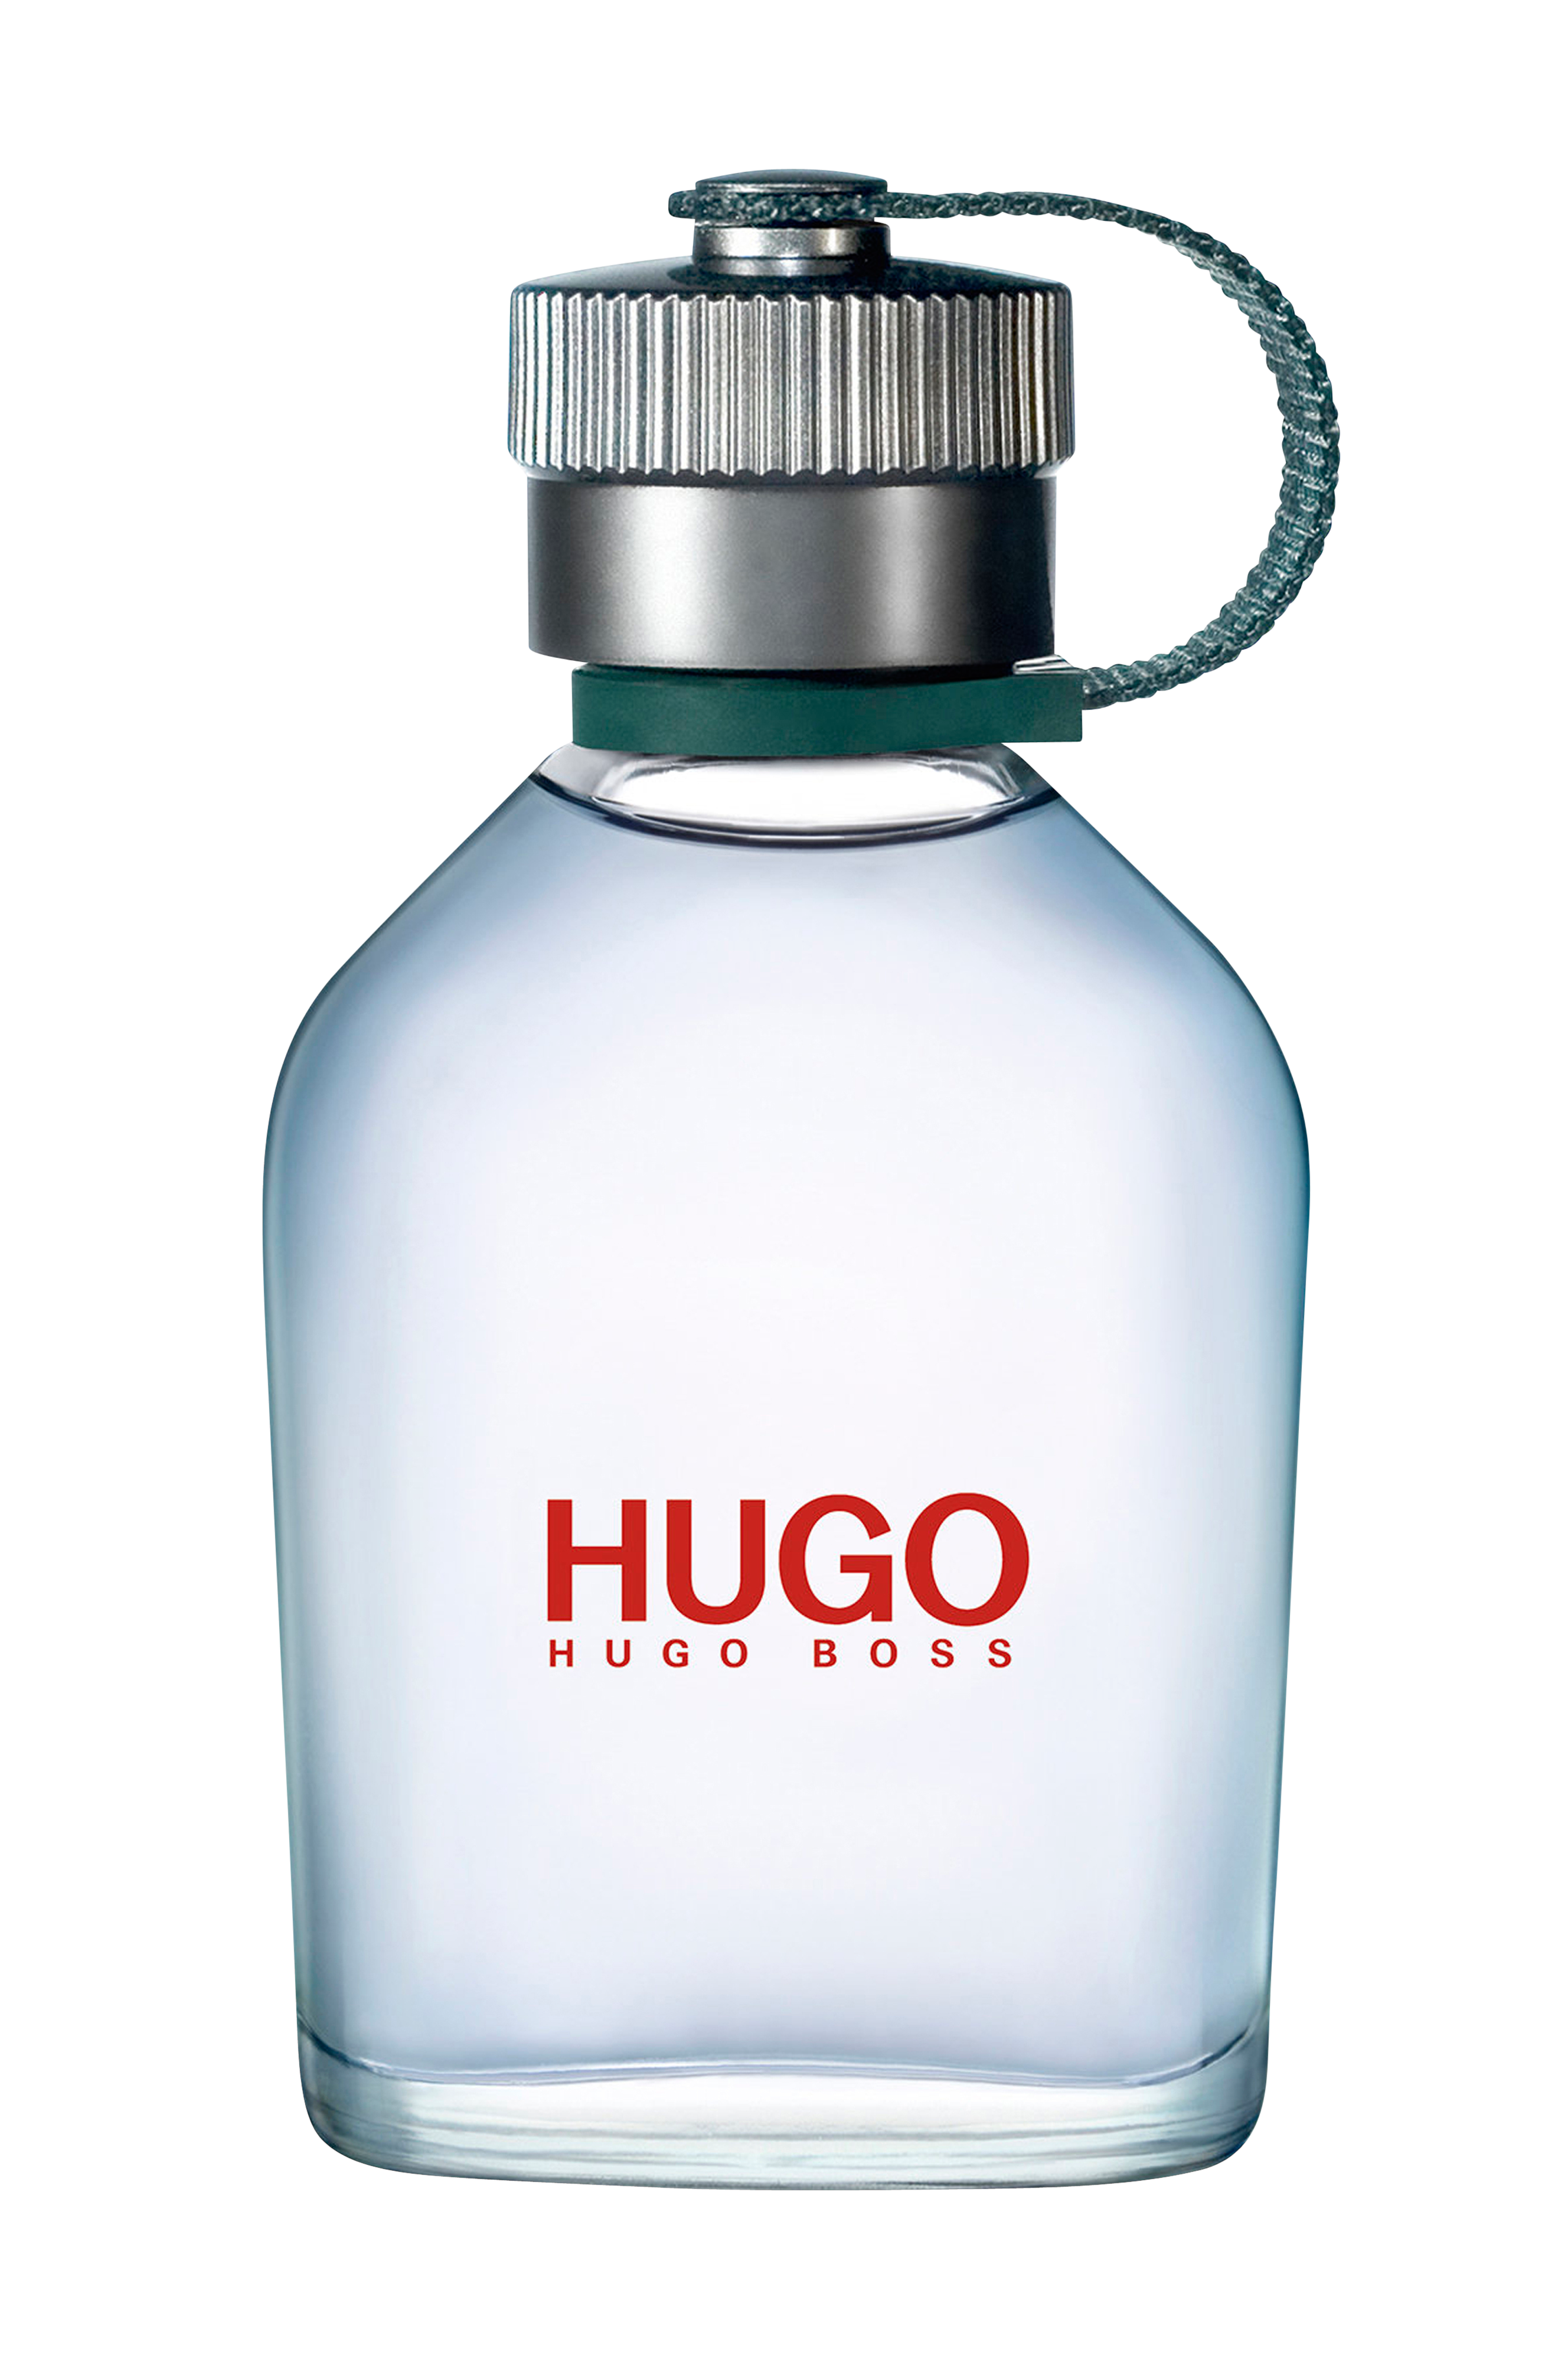 Купить хьюго босс мужские. Hugo Boss Hugo men 100 мл. Тестер Boss Hugo Boss Eau de Toilette 100 ml. Boss Hugo Boss man туалетная вода 100 мл. Туалетная вода Hugo Boss Hugo man, 150 мл.